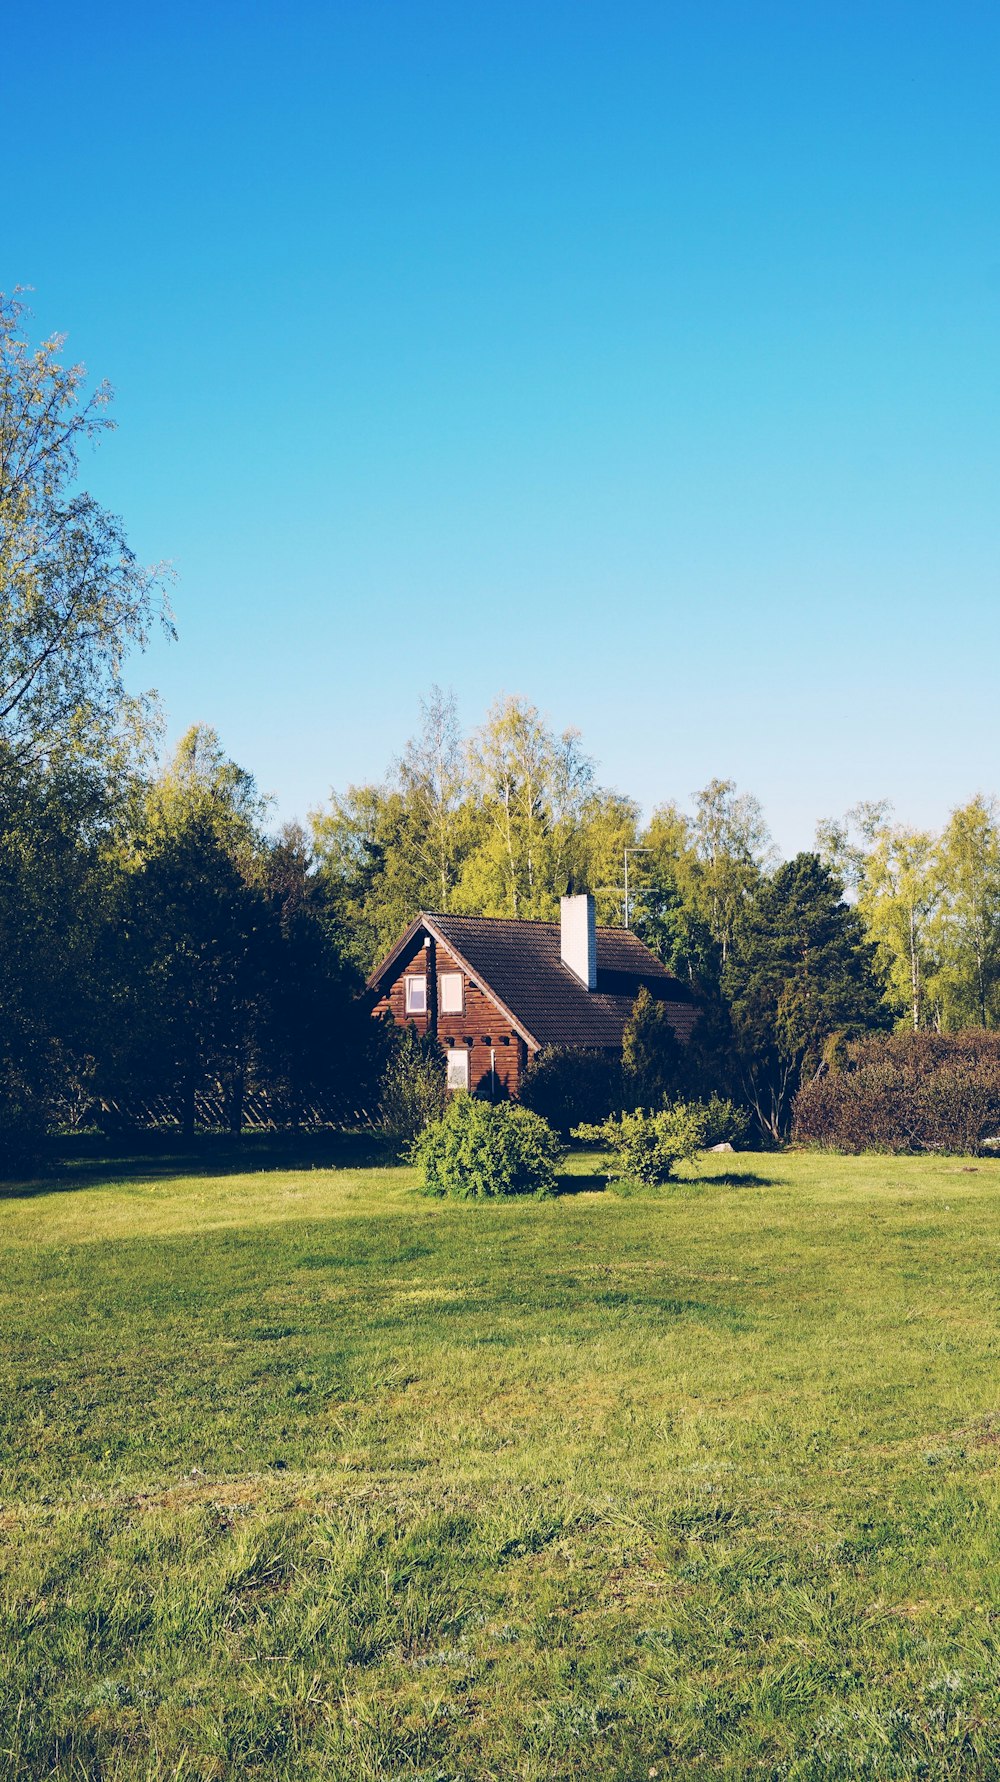 casa de madera marrón en un campo de hierba verde cerca de árboles verdes bajo el cielo azul durante el día